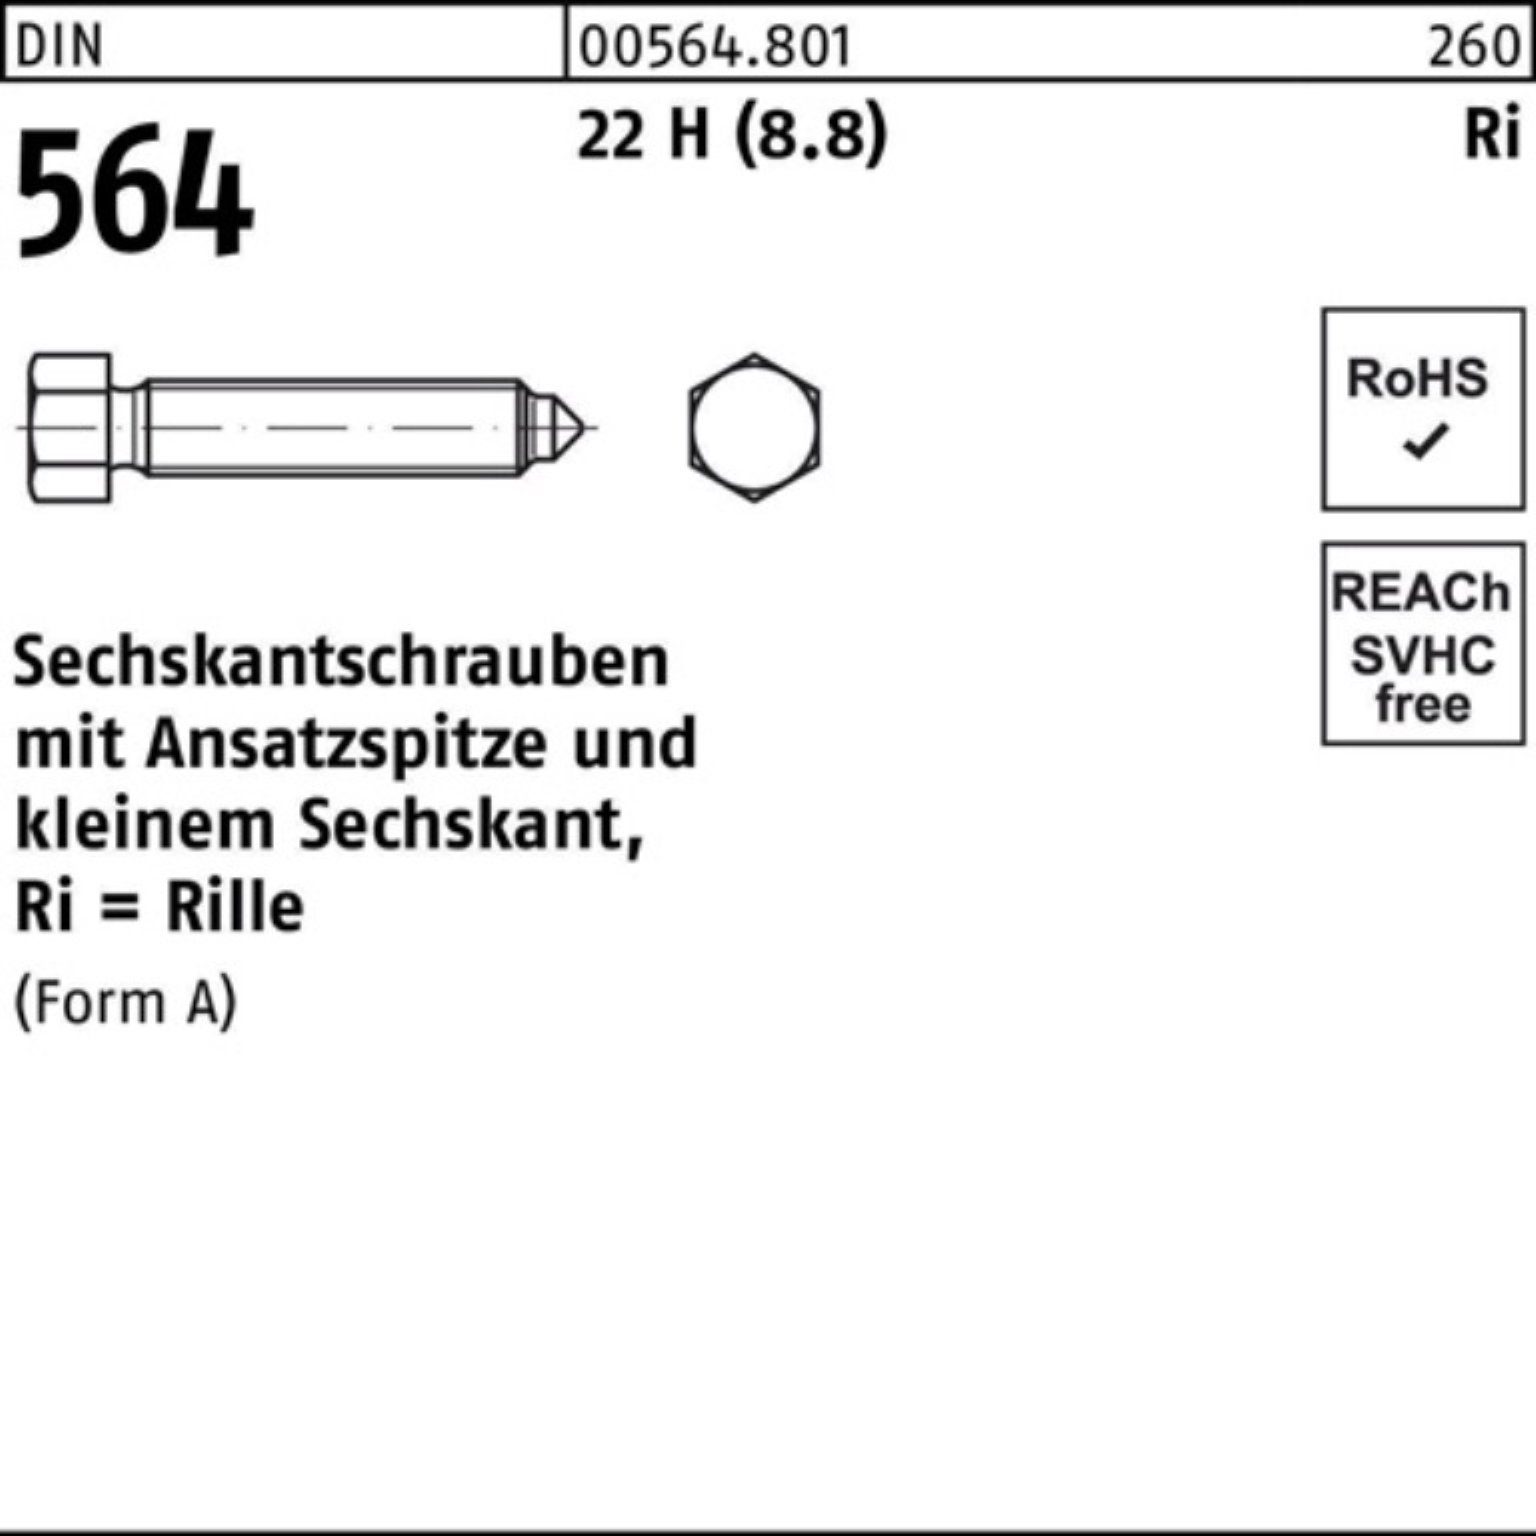 Sechskantschraube 12 22 (8.8) 564 Pack H AM 6x DIN Ansatzspitze Sechskantschraube 100er Reyher